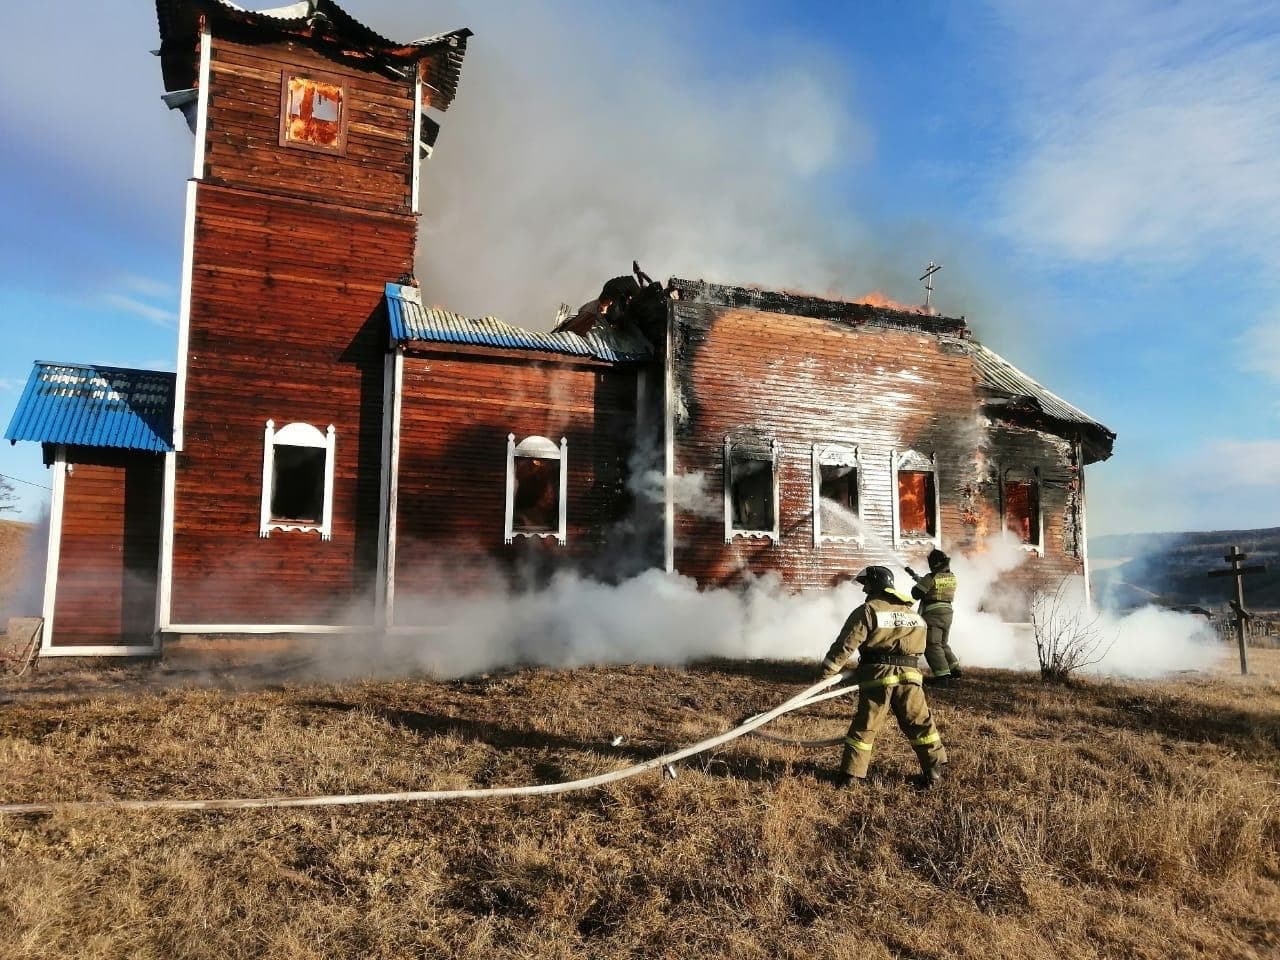 Здание храма горело в селе Иркутской области, пострадавших нет - МЧС